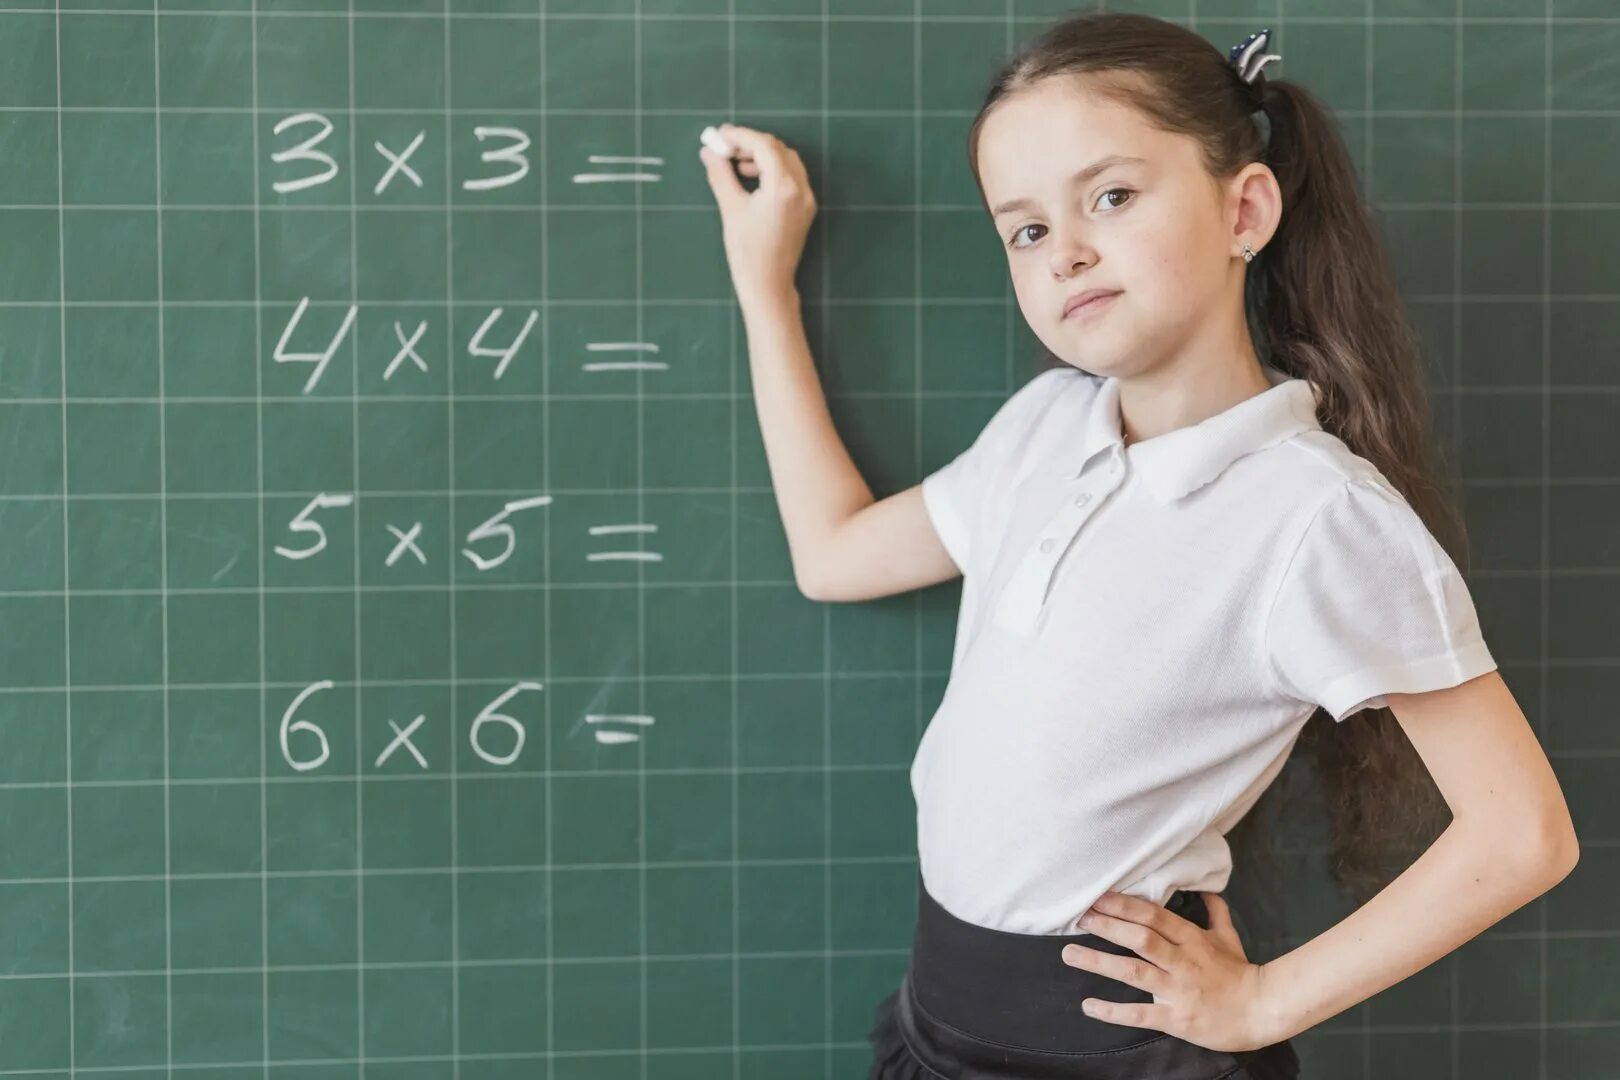 Ребенок учит математику. Таблица умножения для детей. Урок математики в школе. Математика для школьников.